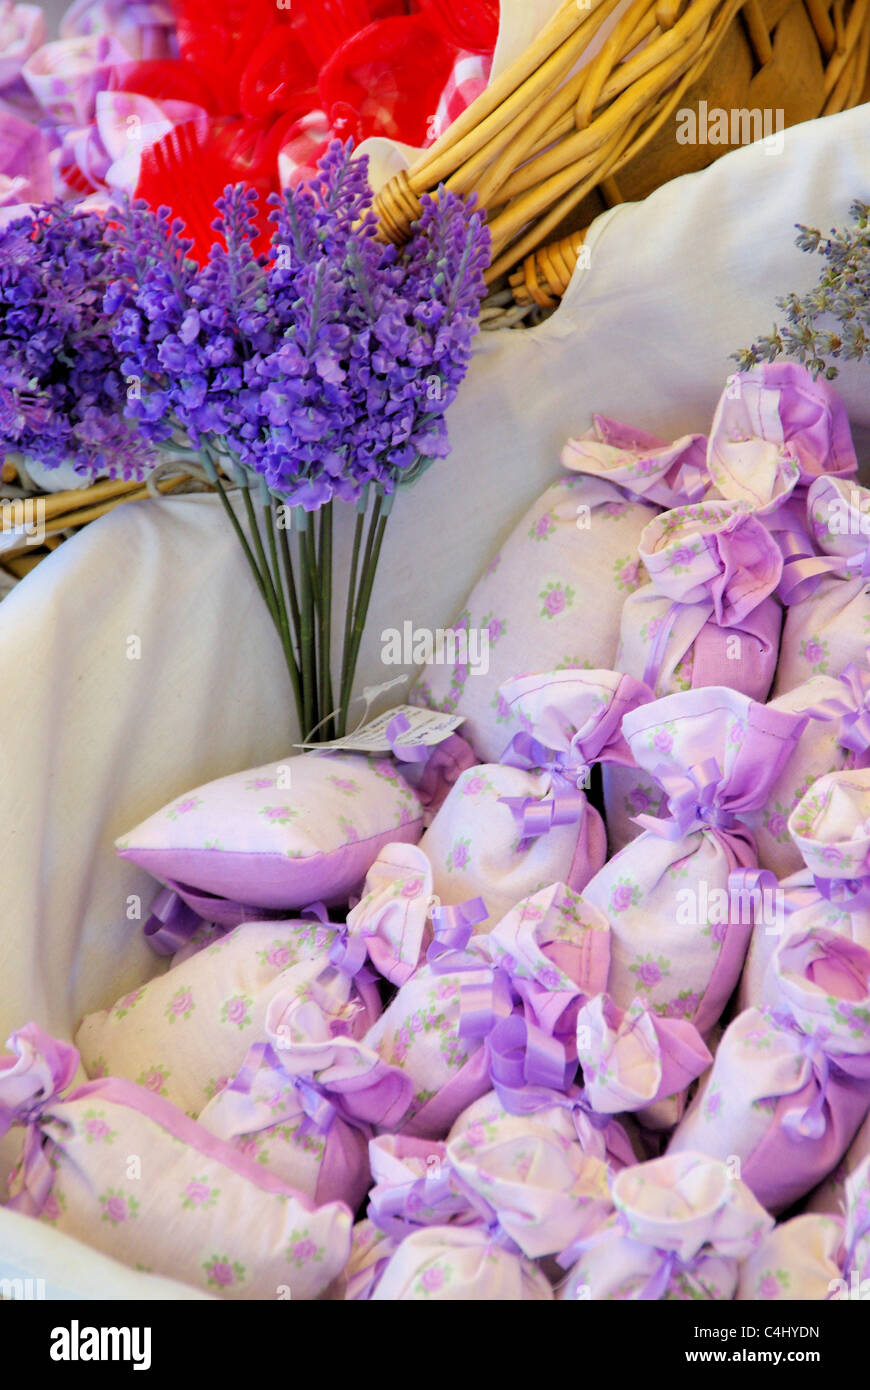 Lavendelsäckchen - lavanda piccolo sacchetto 09 Foto Stock